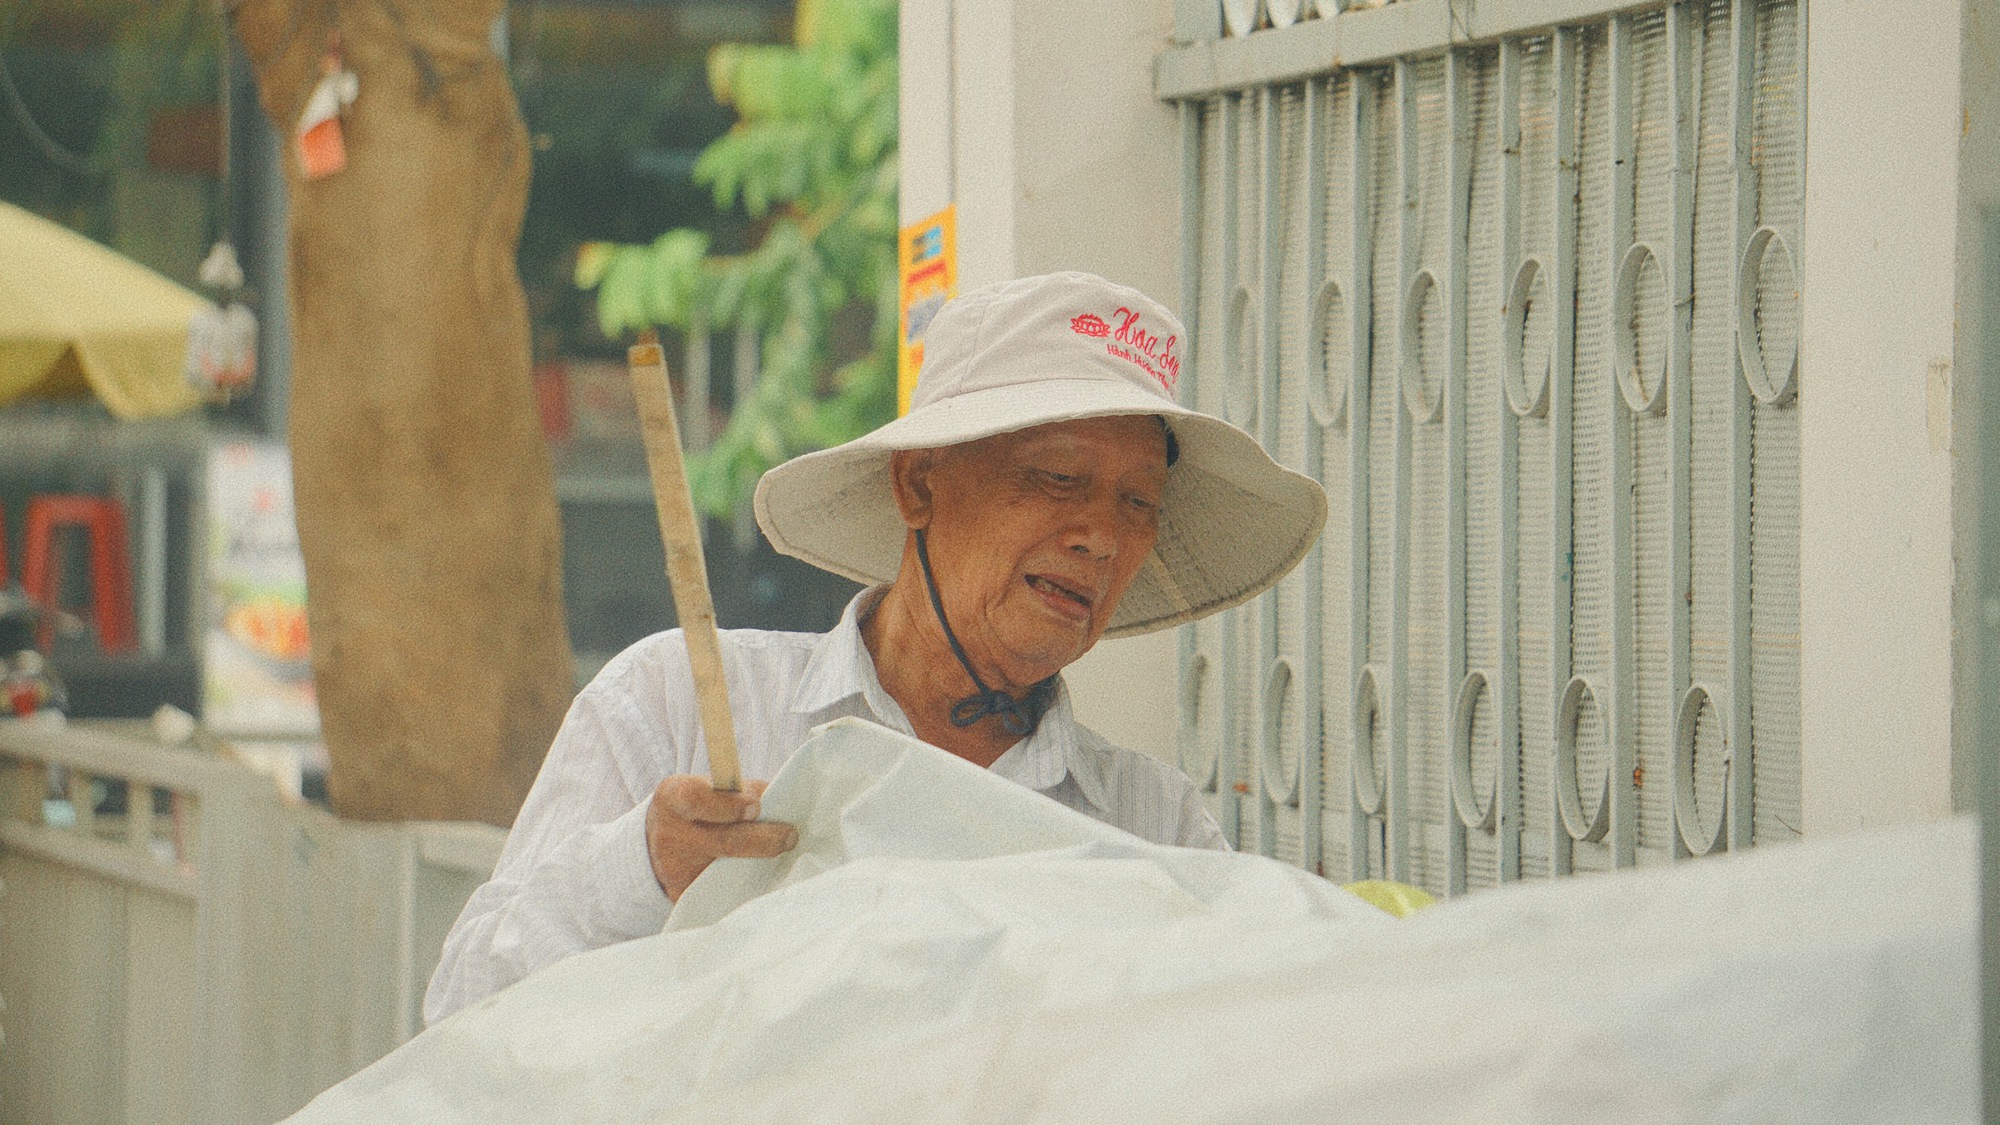 Cụ ông gần 90 tuổi đội mưa bán sách cũ ở vỉa hè Sài Gòn: "Lần nào thấy người trẻ đến mua sách là tôi vui lắm"- Ảnh 6.